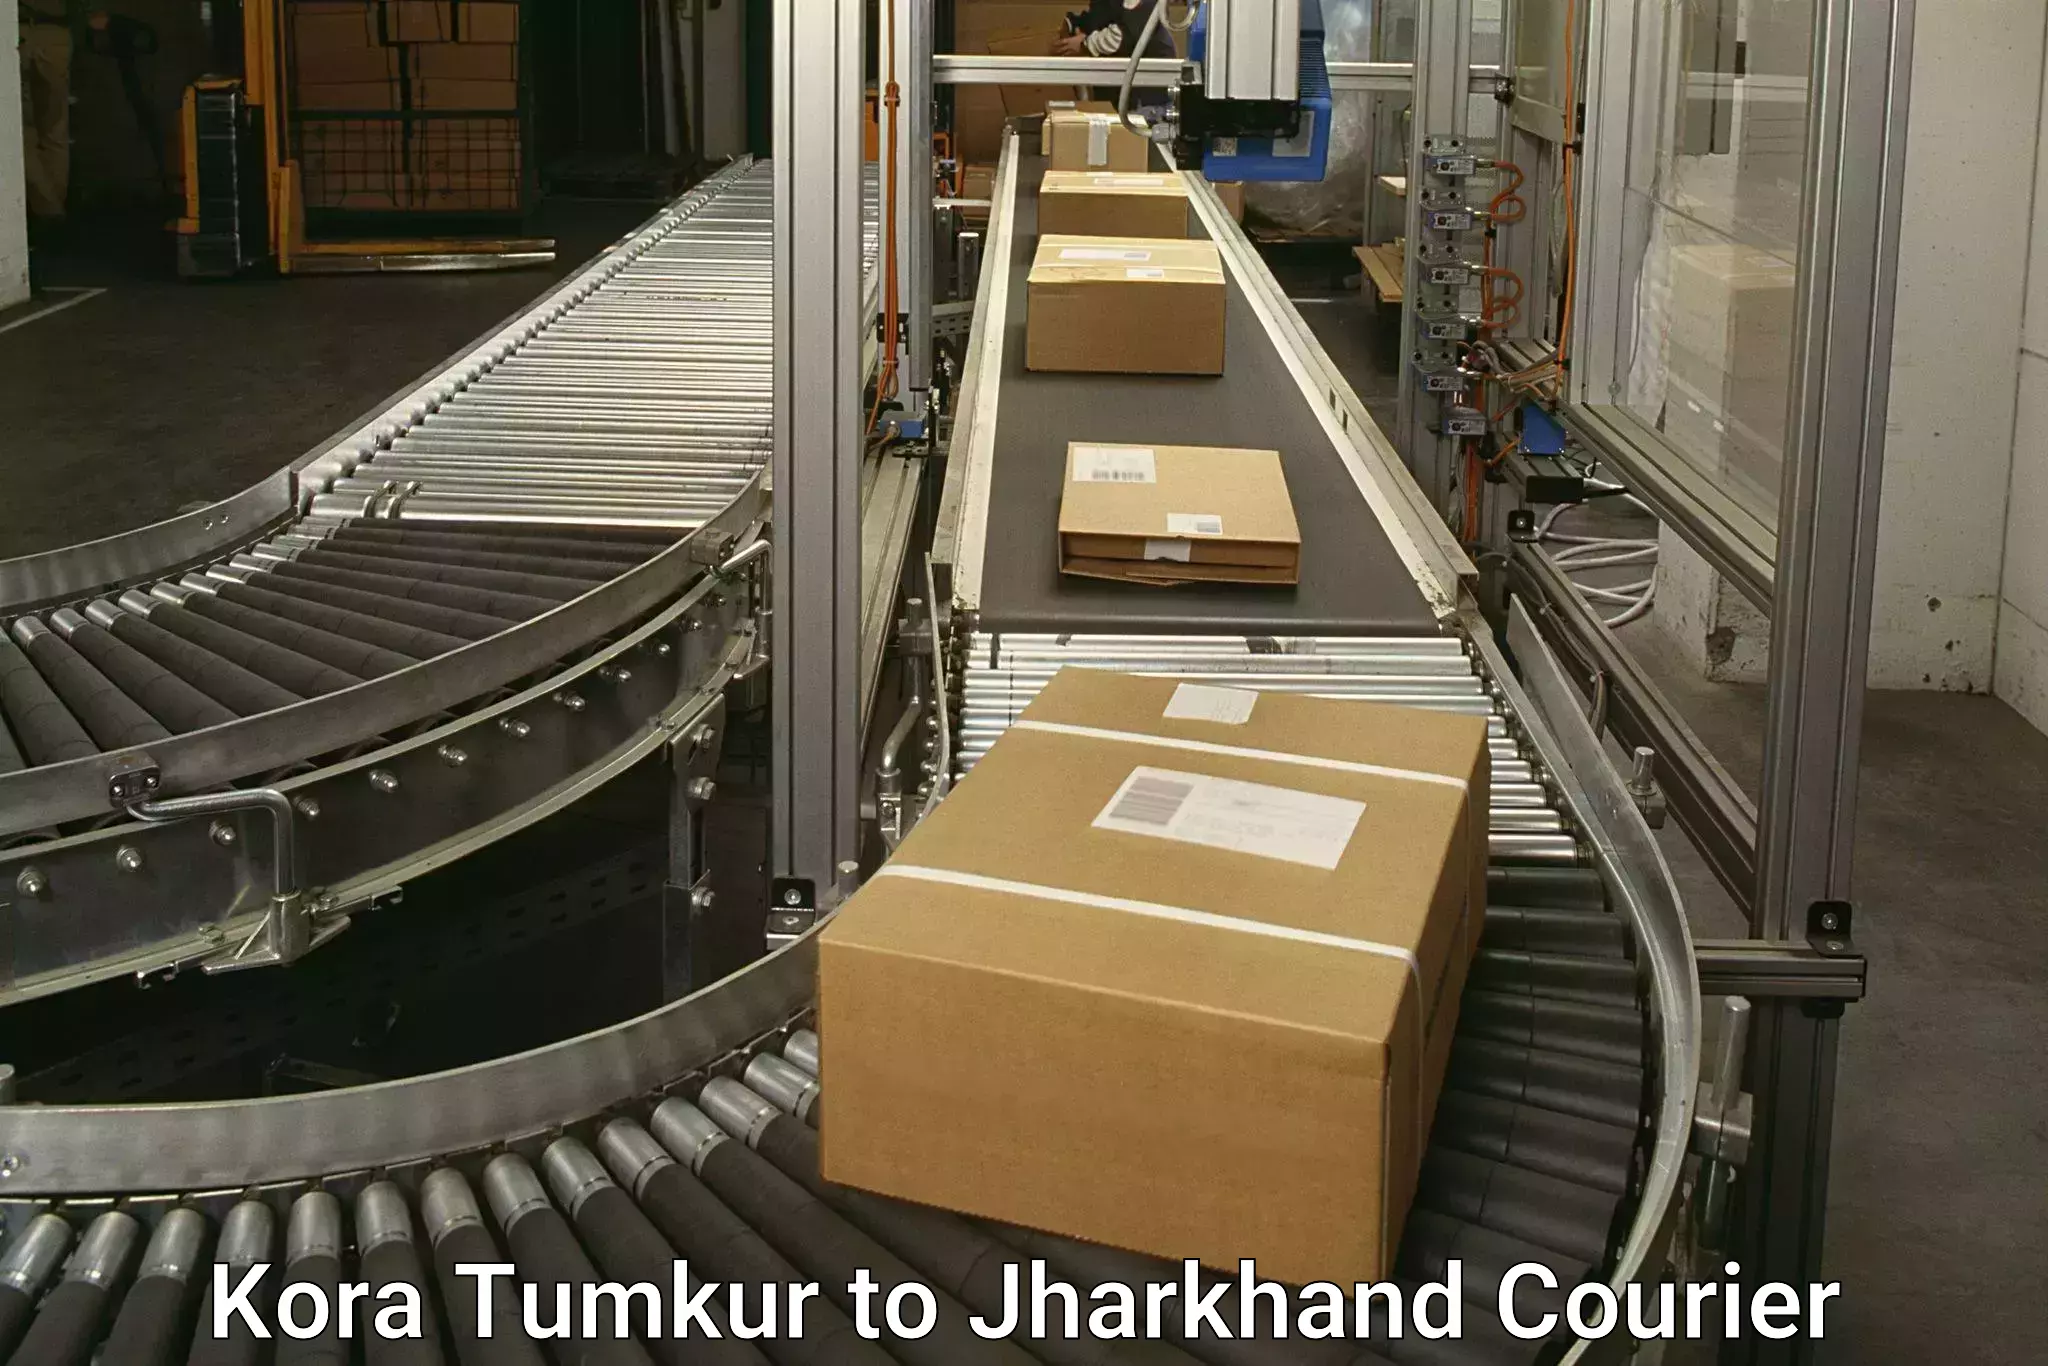 Reliable courier services Kora Tumkur to Bundu